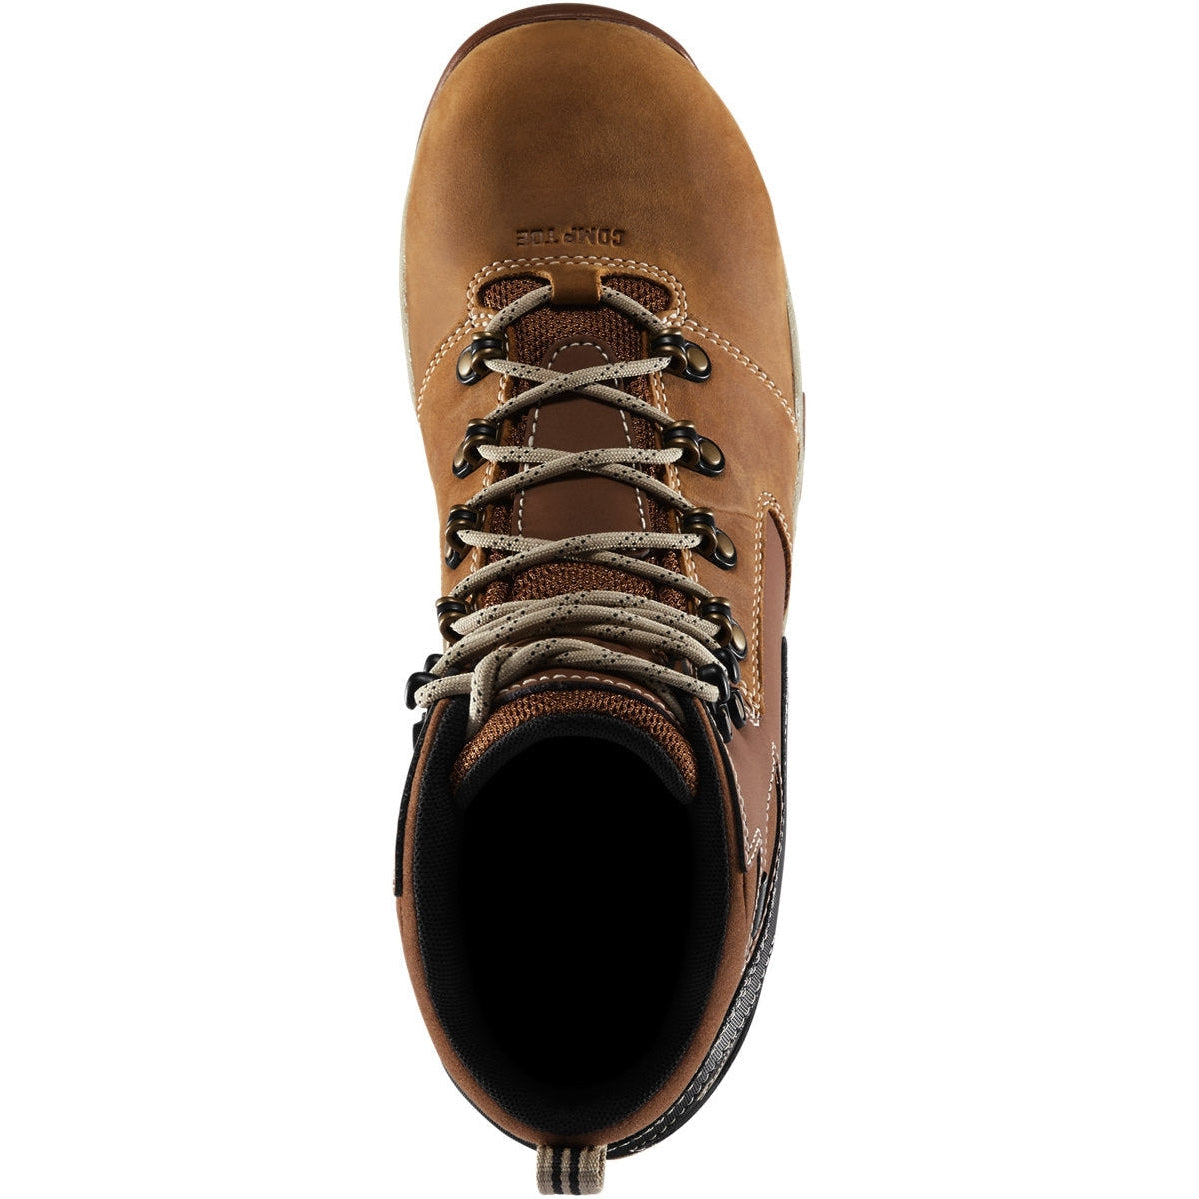 Danner Men's Vicious 4.5" Comp Toe WP Slip Resist Work Boot -Tan- 13886  - Overlook Boots